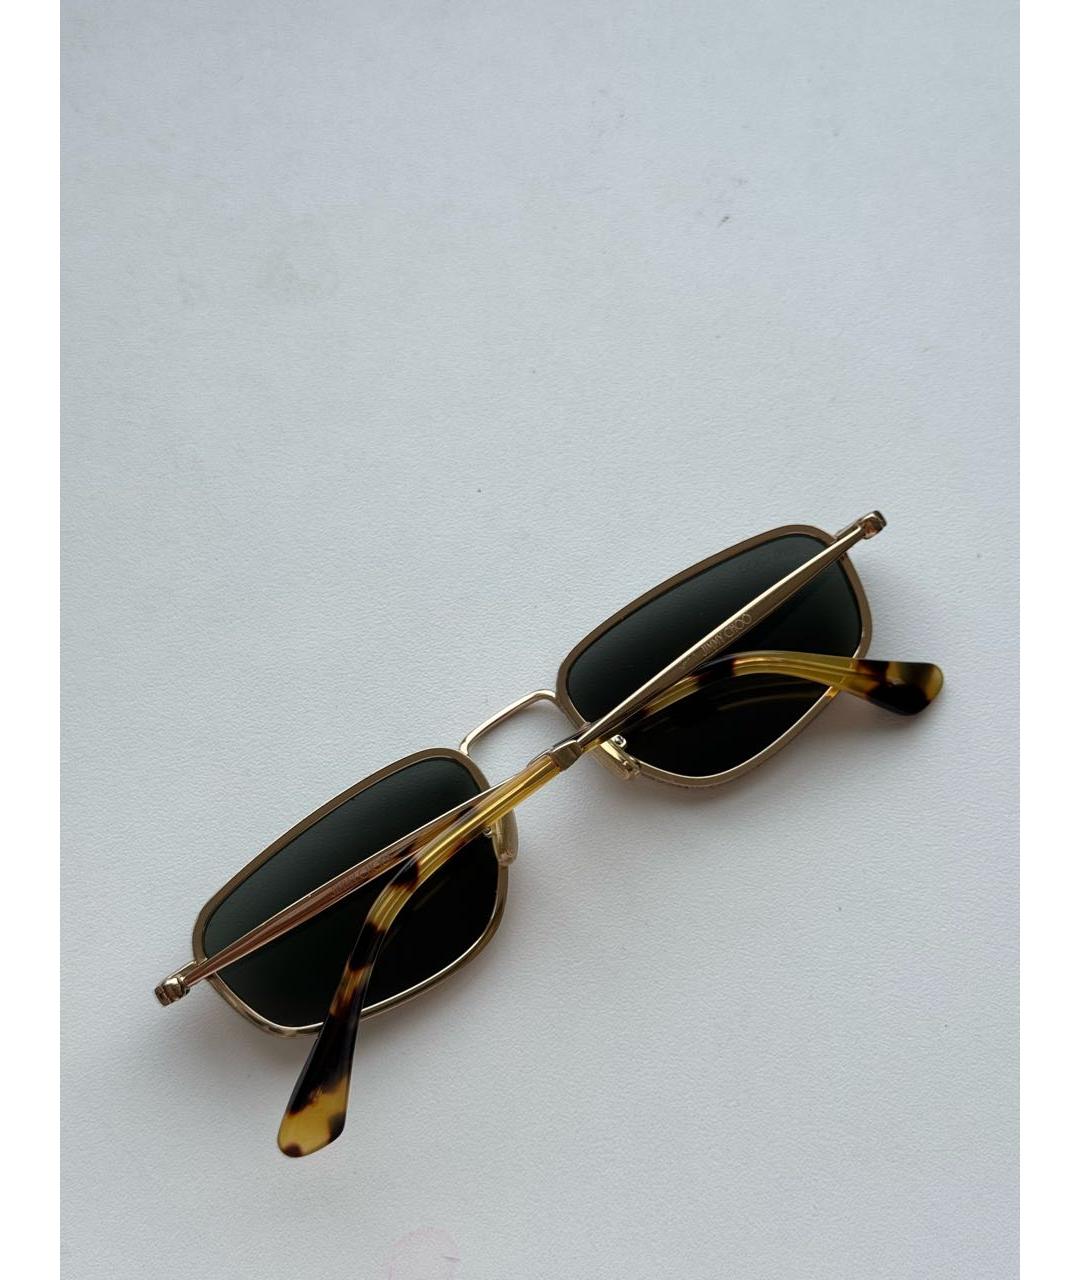 JIMMY CHOO Металлические солнцезащитные очки, фото 2